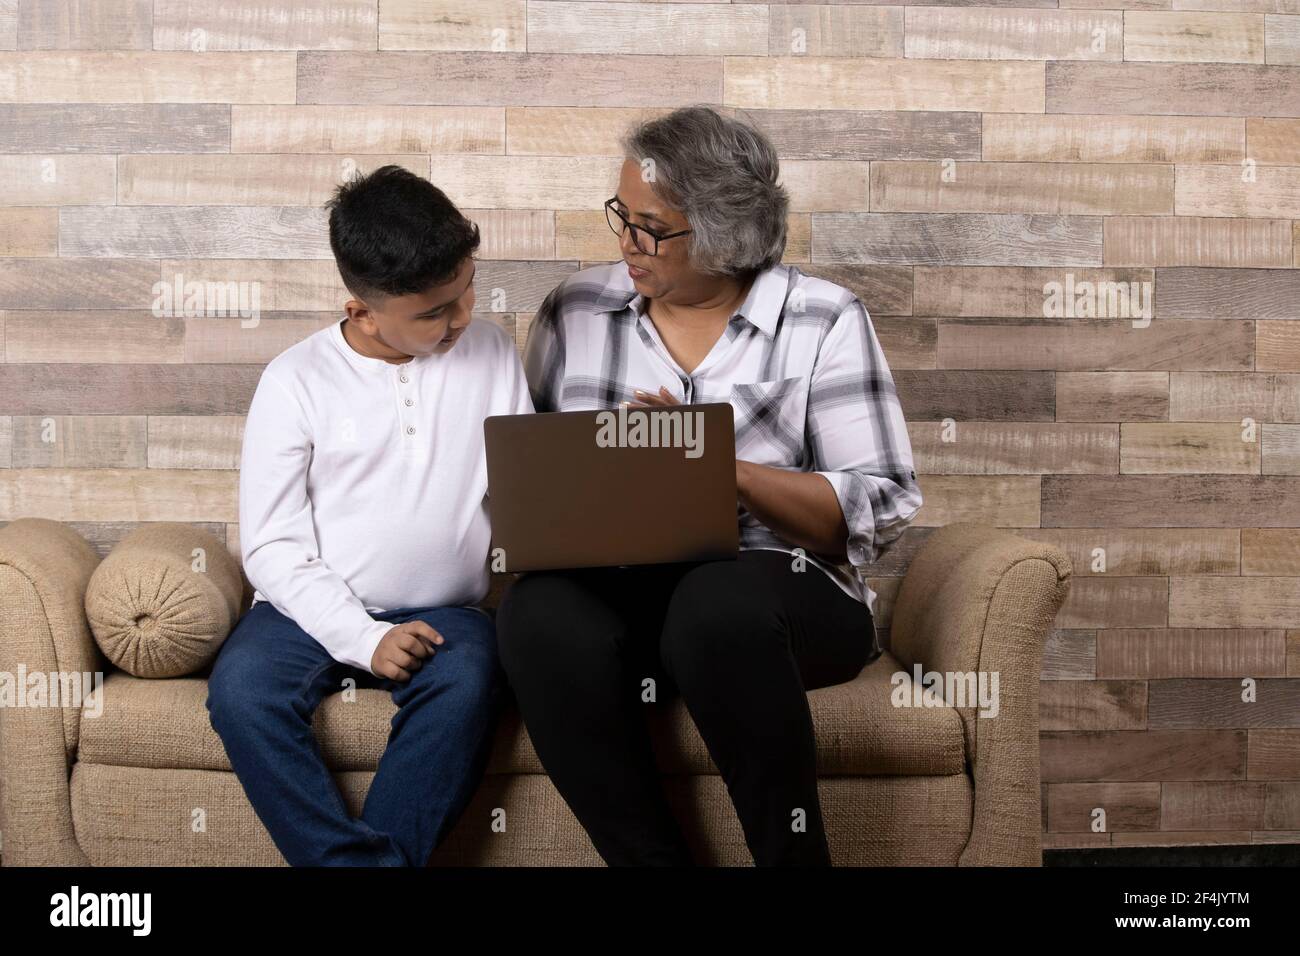 Glückliche Momente mit Oma, indische oder asiatische ältere Dame verbringen Qualität Zeit mit ihrem Enkel mit Laptop Stockfoto